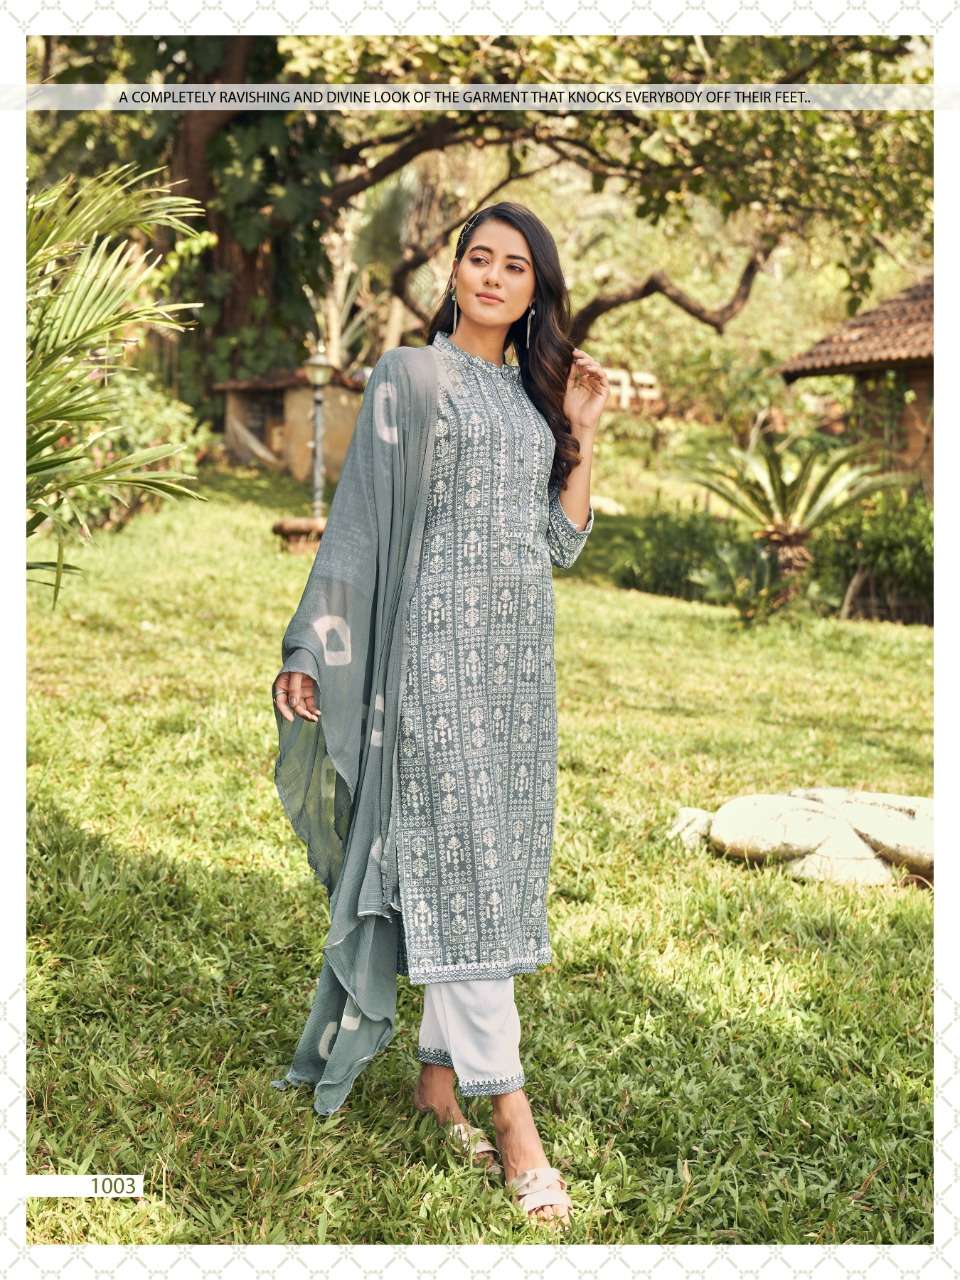 vitara fashion by victoria reyon fabric ready made salwar kameez online wholesaler surat 